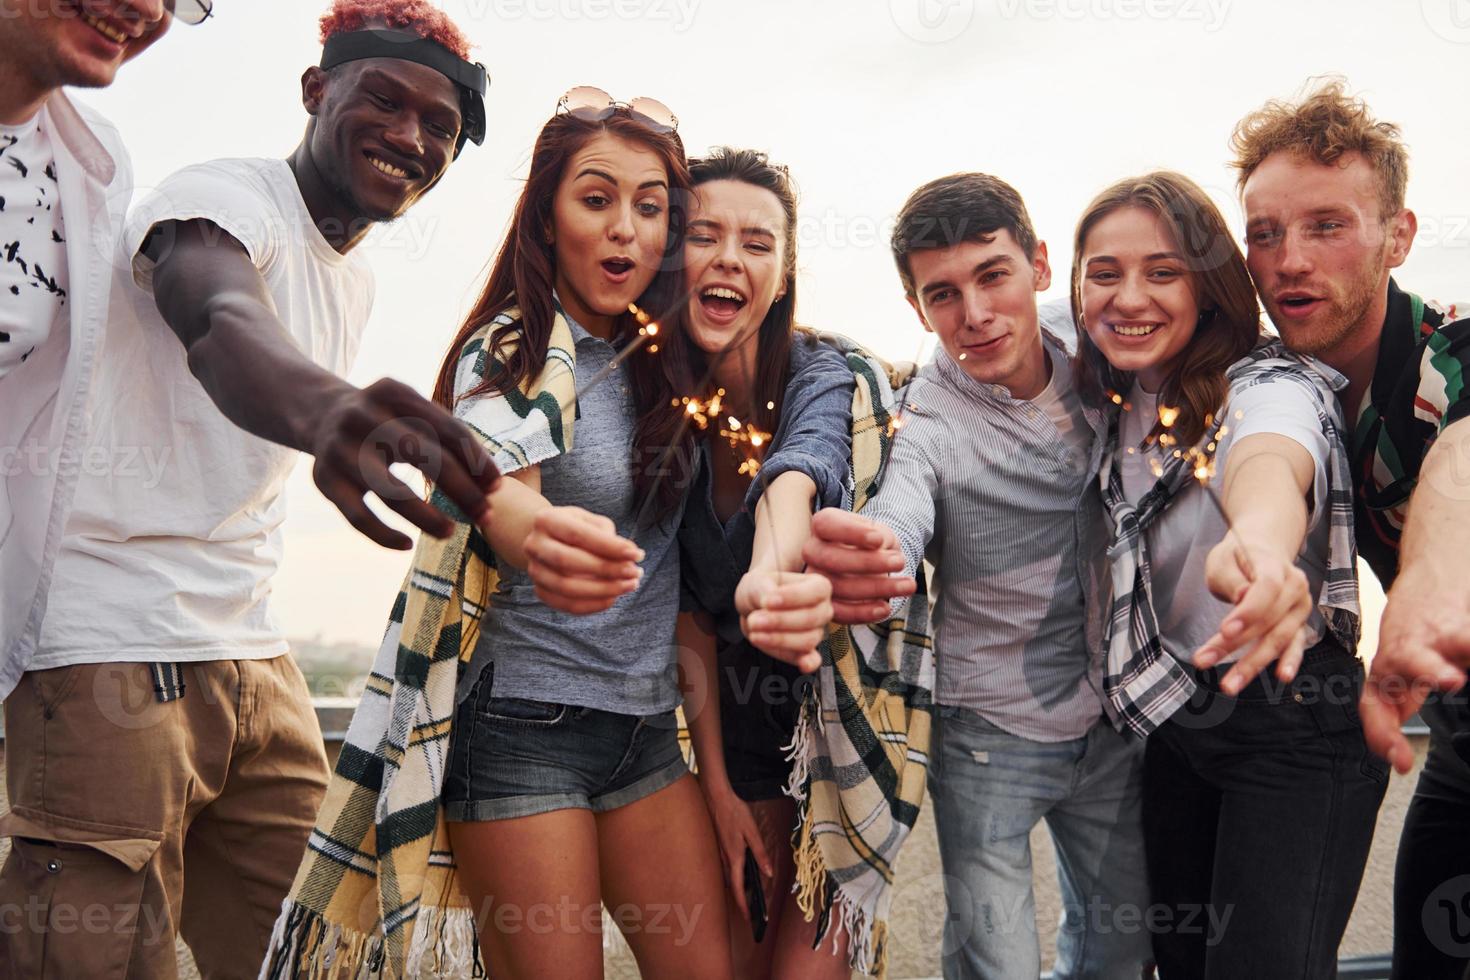 com estrelinhas nas mãos. grupo de jovens em roupas casuais faz uma festa no telhado juntos durante o dia foto